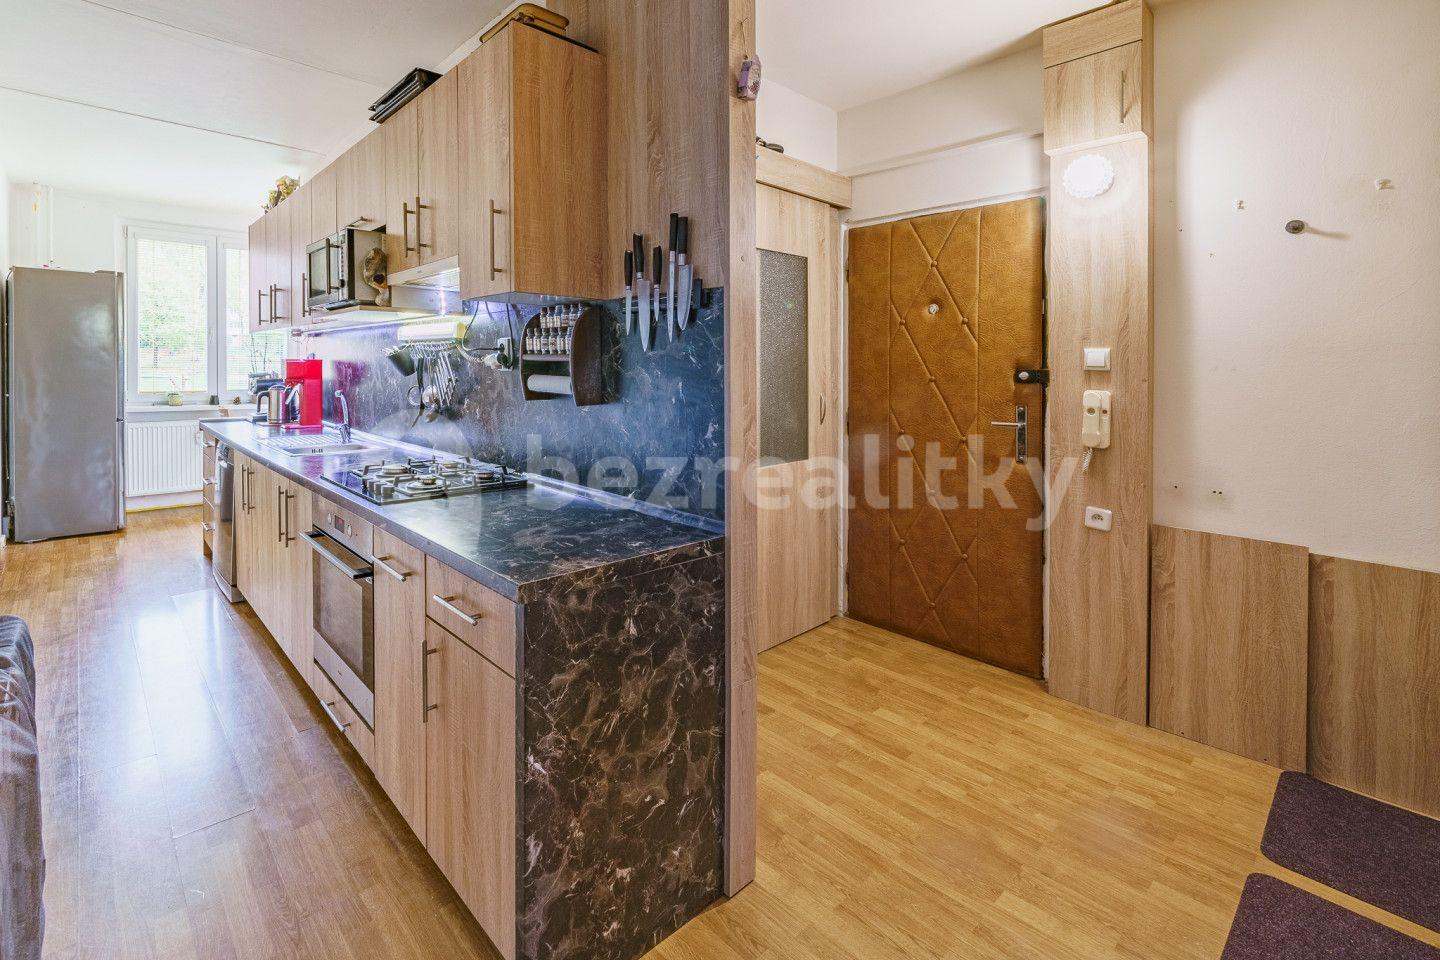 4 bedroom flat for sale, 82 m², Do Zátiší, Cheb, Karlovarský Region